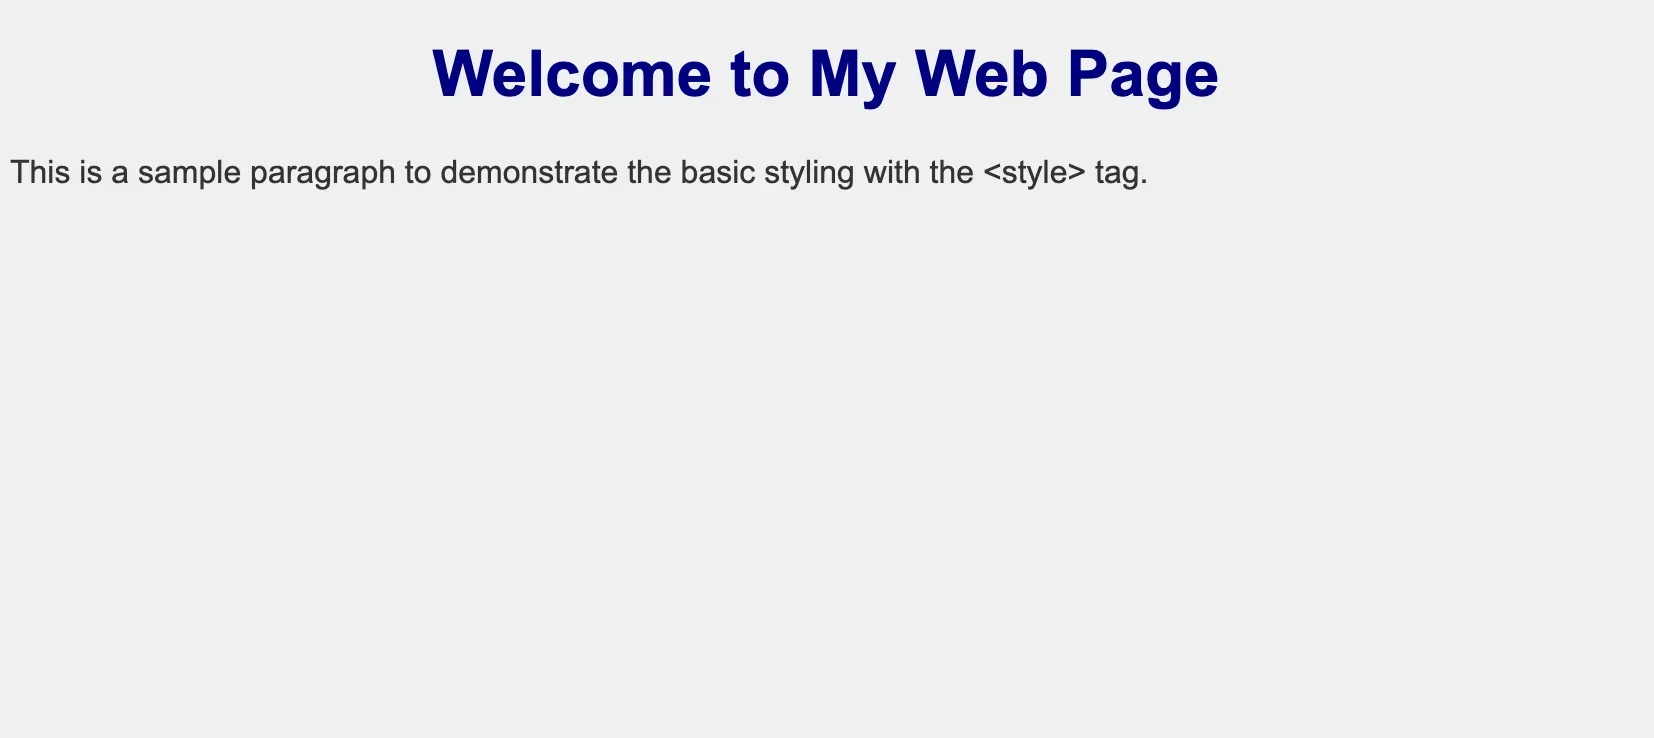 Basic Styling of HTML Elements